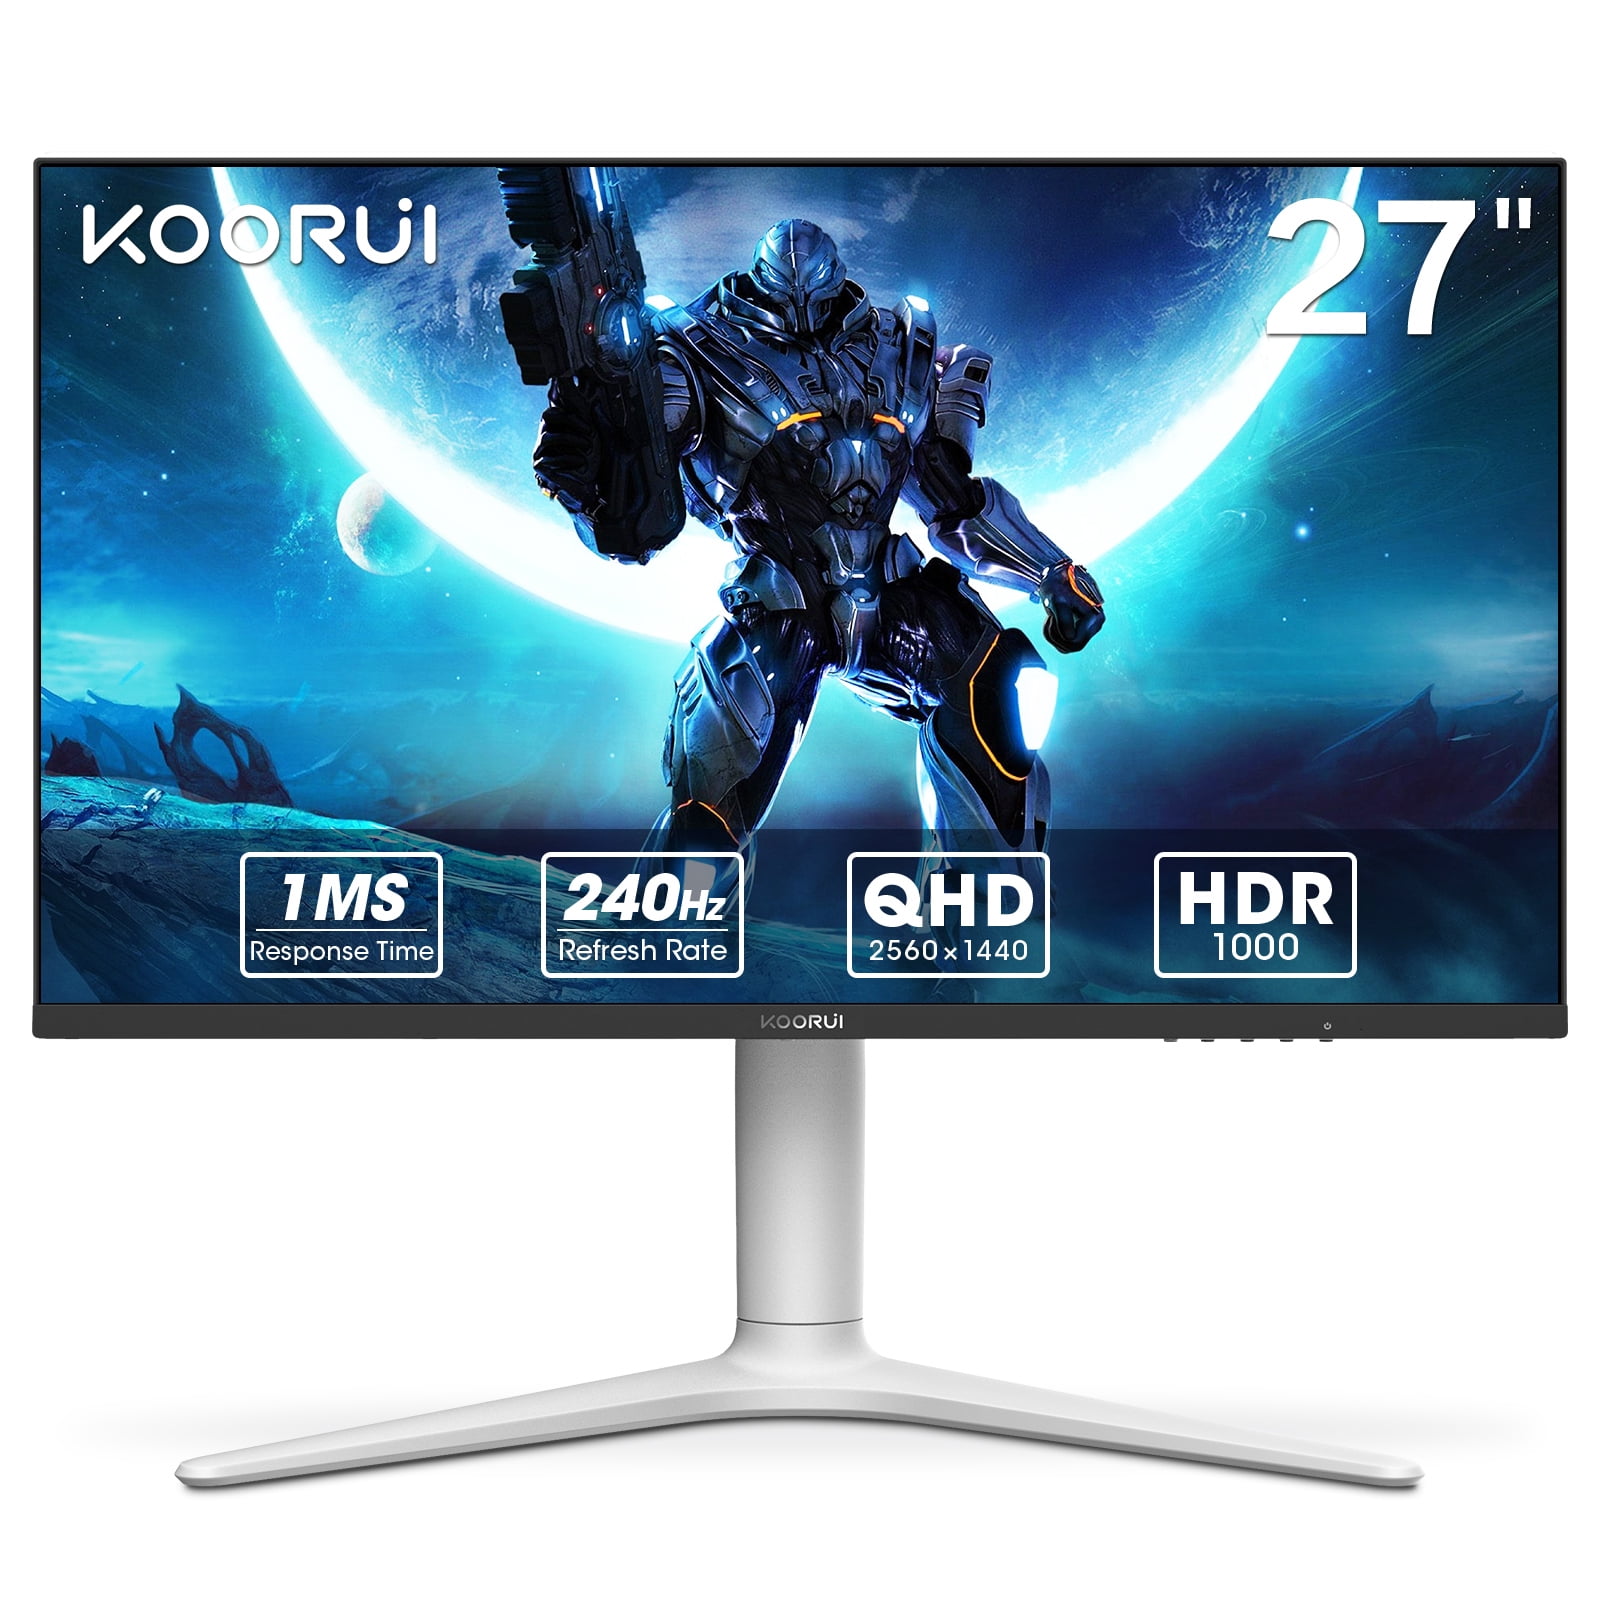  KOORUI Monitor para juegos, 27 pulgadas WQHD 2560 x 1440 monitor  de computadora de PC, actualización de hasta 240Hz, 1 ms, sincronización  adaptativa, HDR10, DCI-P3 90%, monitor de 144 Hz, DisplayPort, : Electrónica